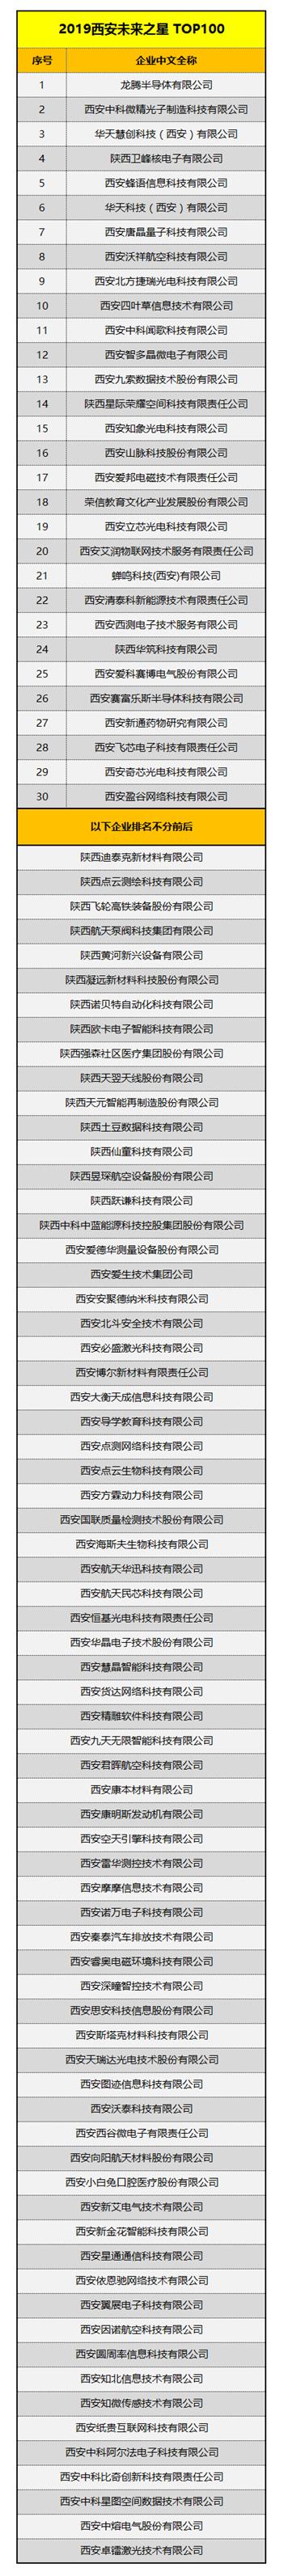 三家光电芯片企业上榜，“西安龙门榜TOP20”榜单出炉-第3张图片-9158手机教程网